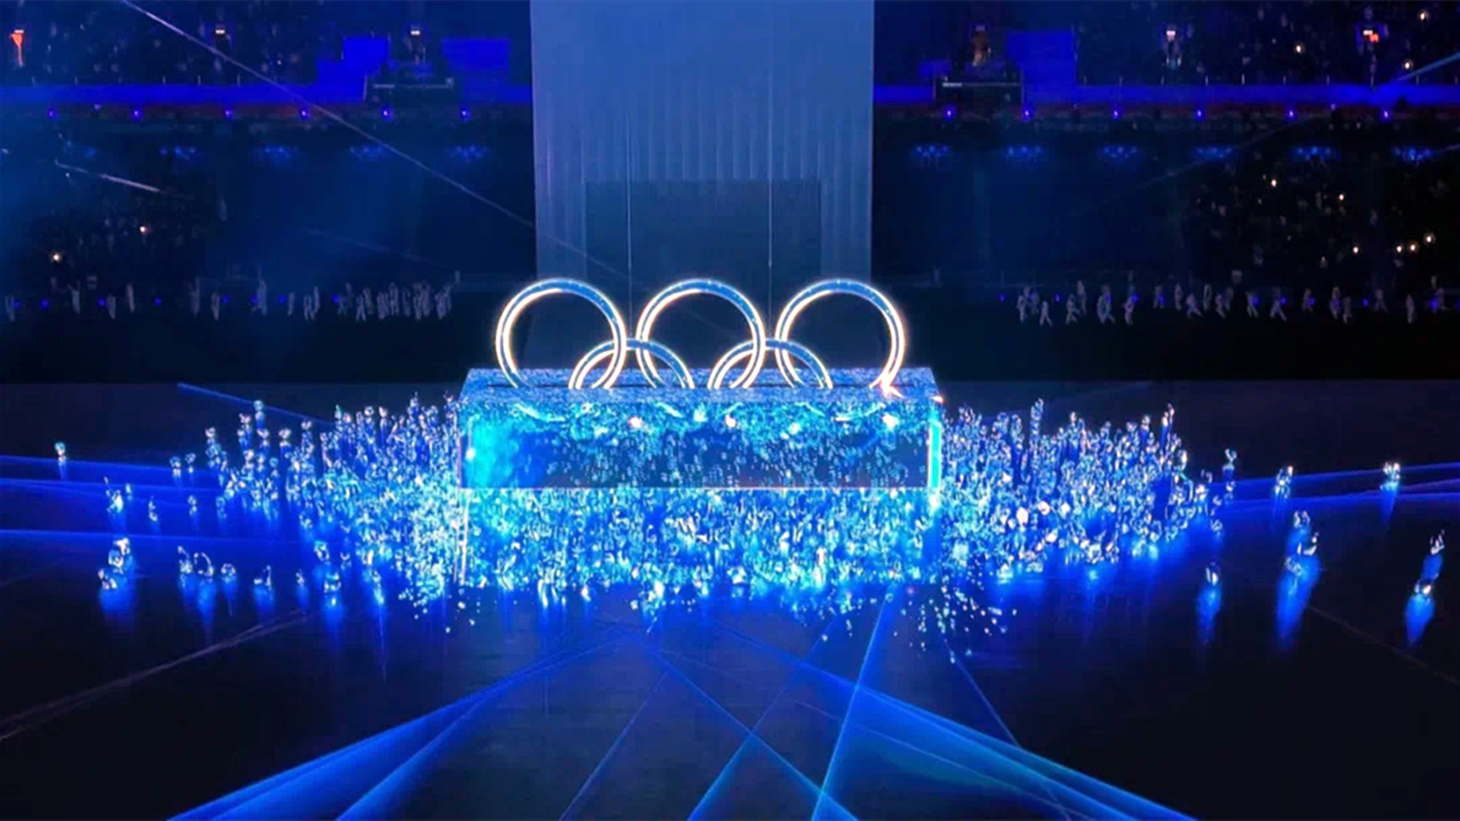 本次北京冬奥会有科技冬奥之称,最大亮点就是科技赋能艺术,开幕式全程